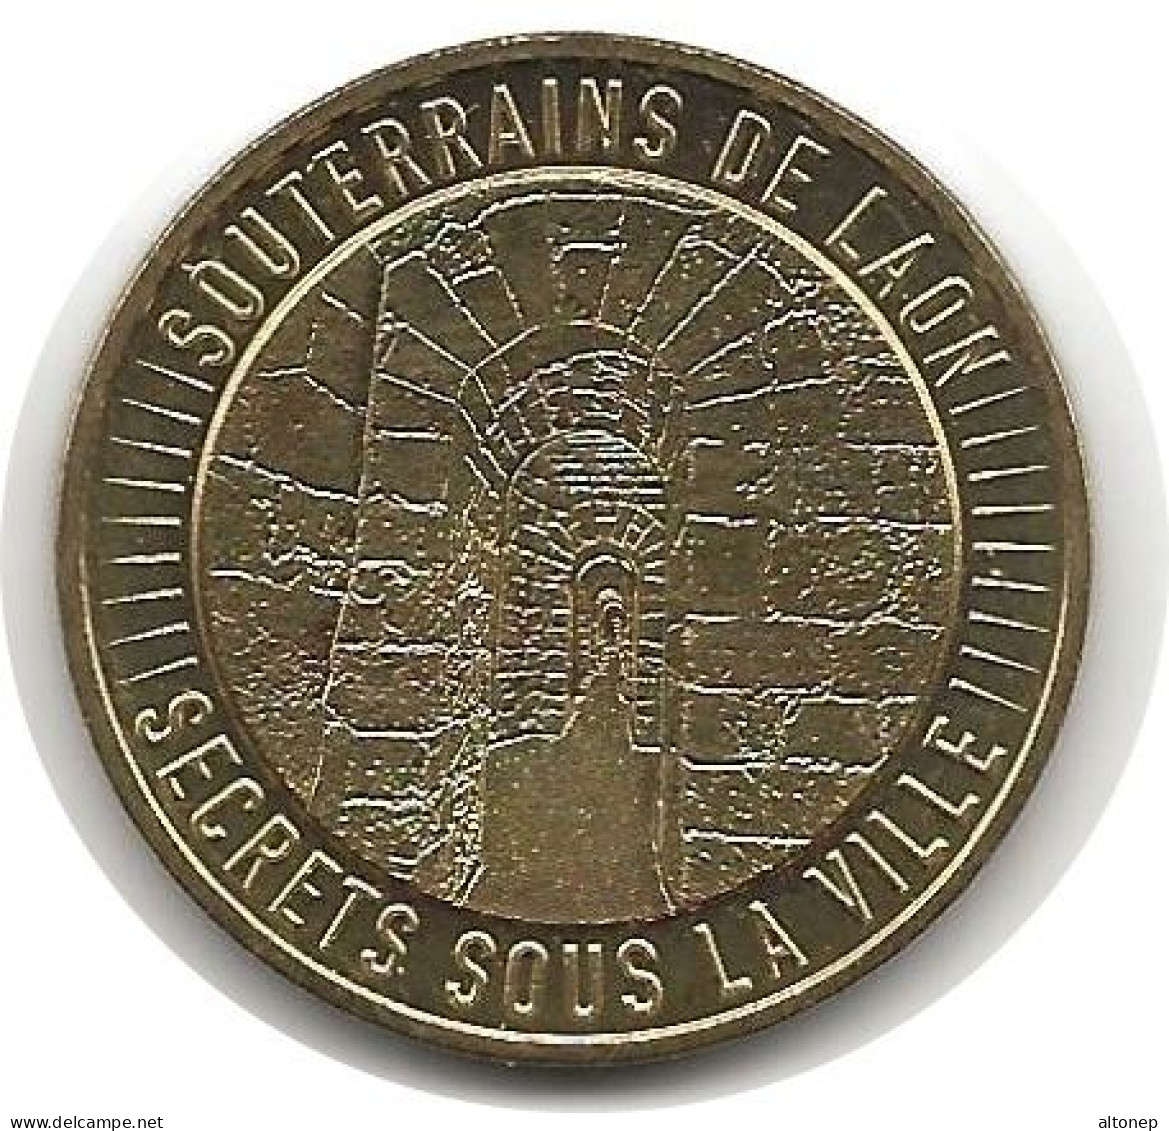 Laon - 02 : Souterrains (Monnaie De Paris, 2019) - 2019